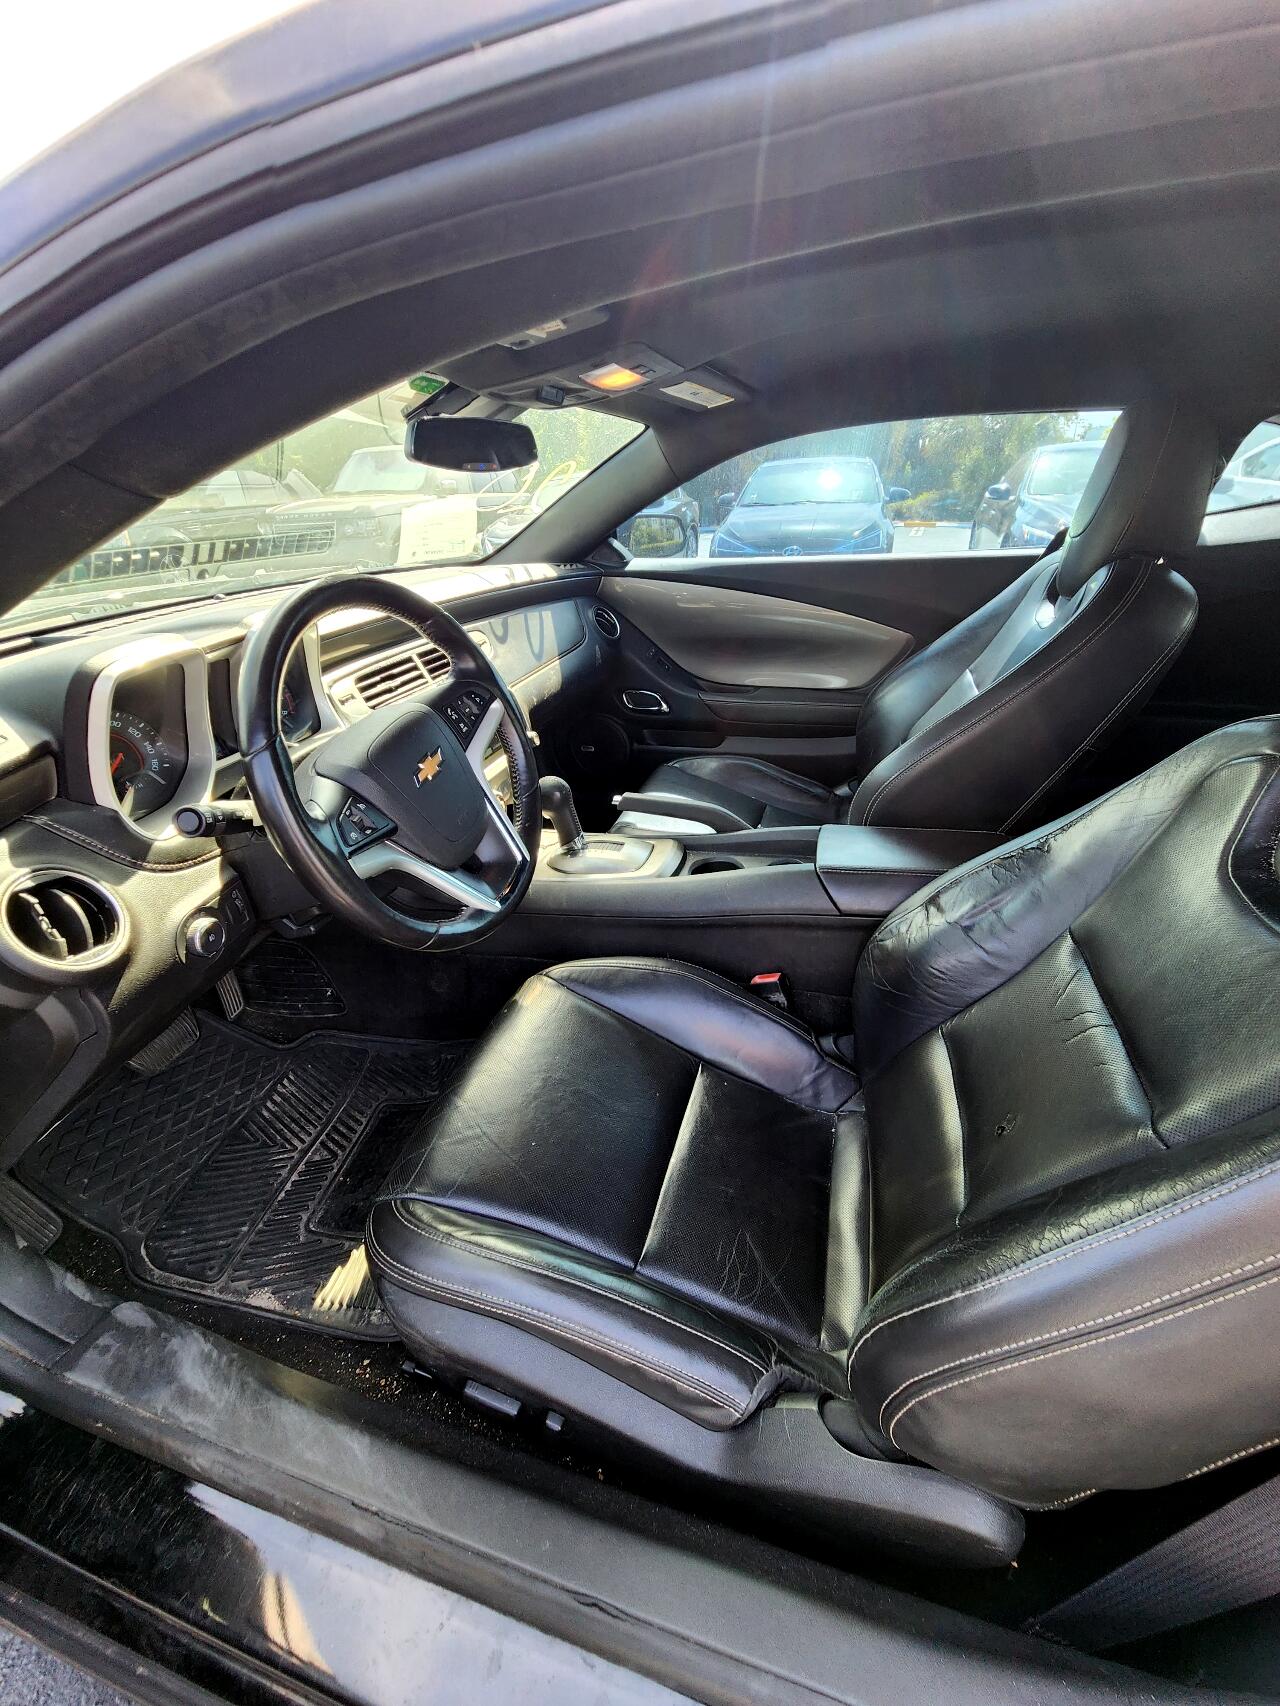 2015 CHEVROLET Camaro Coupe - $17,999